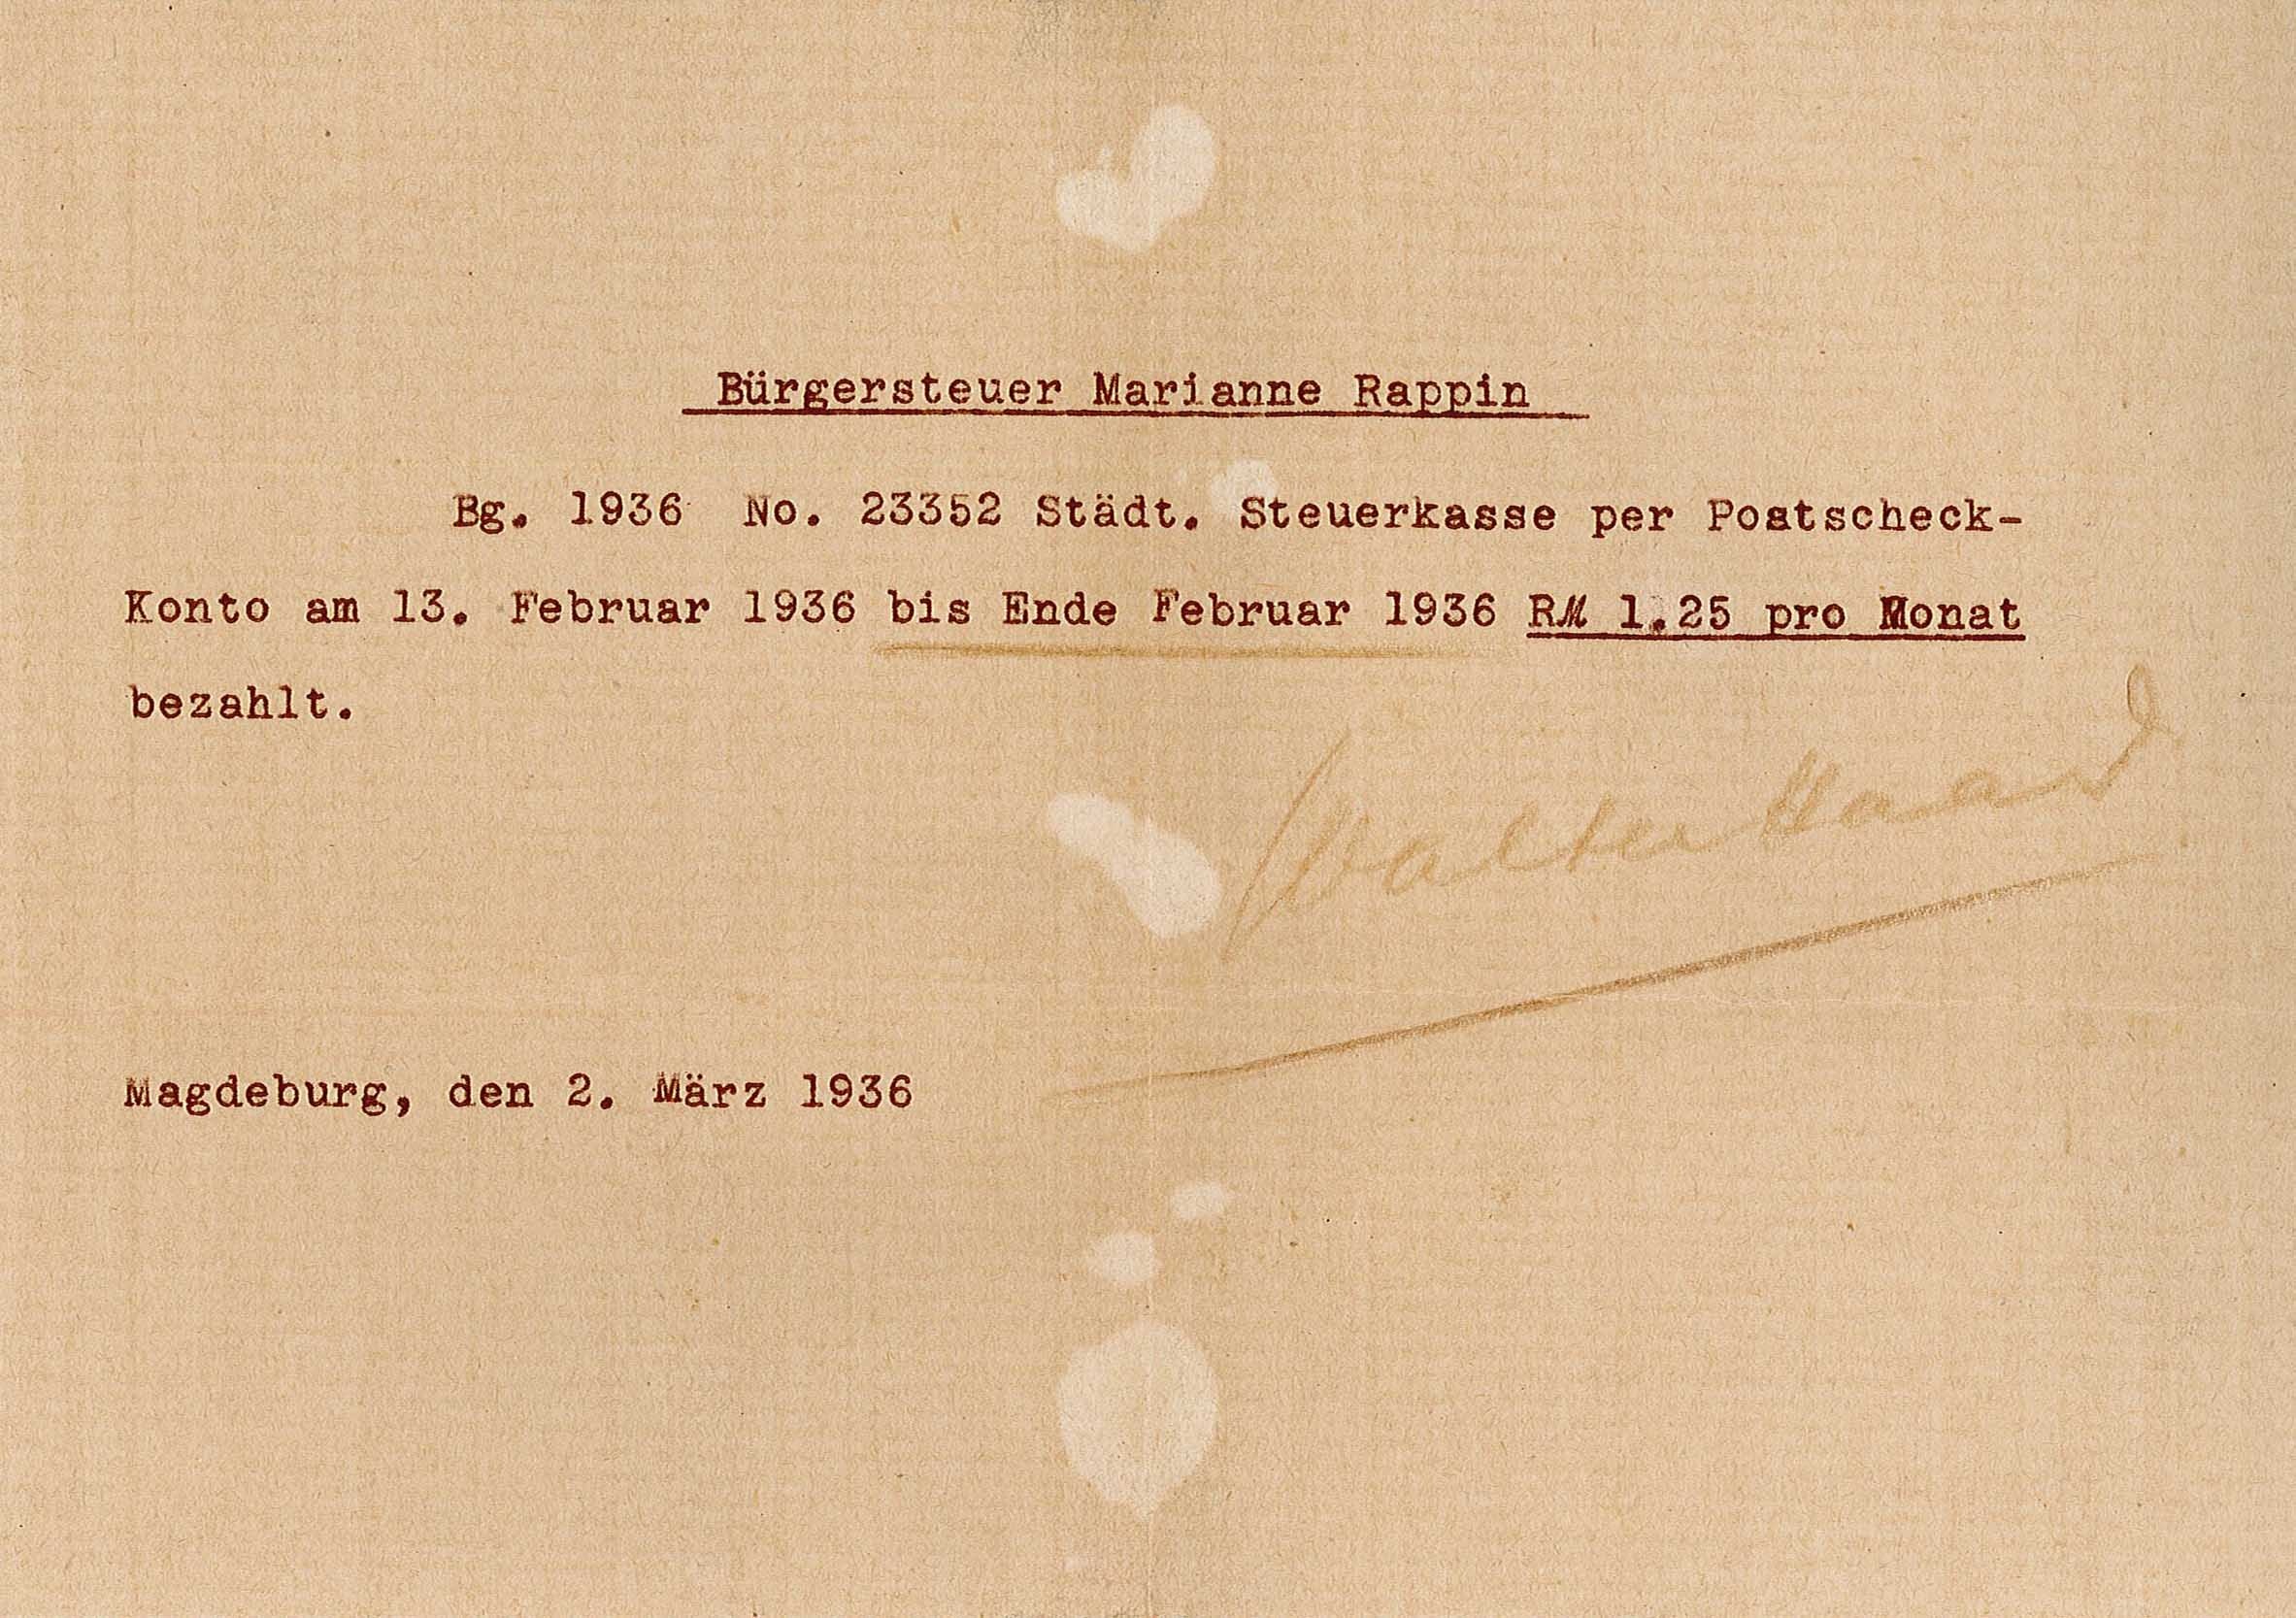 Nachweis über Bürgersteuer für Marianne Rappin, 1936 (Museum Wolmirstedt RR-F)